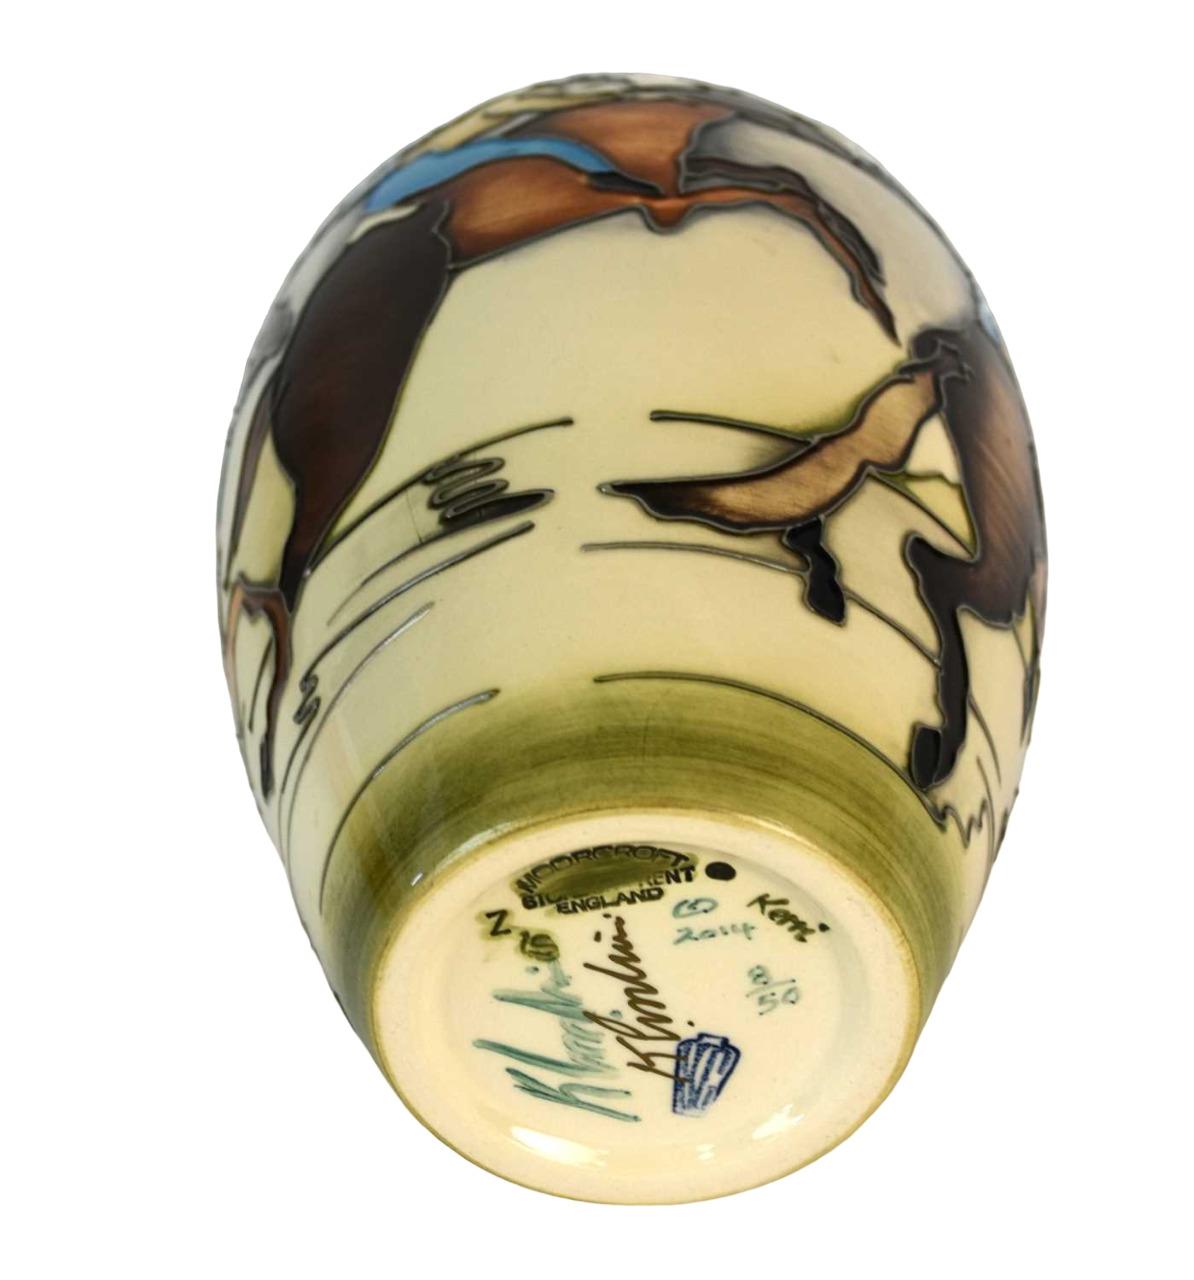 EDITION LIMITEE Vase Moorcroft conçu par Kerry Goodwin. 
Un incroyable vase en poterie d'art au design équestre. 
Décorée de personnages à cheval avec des moulins à vent au-delà, numérotée 5/50, datée 2015, signée à la fois sous et sur la glaçure